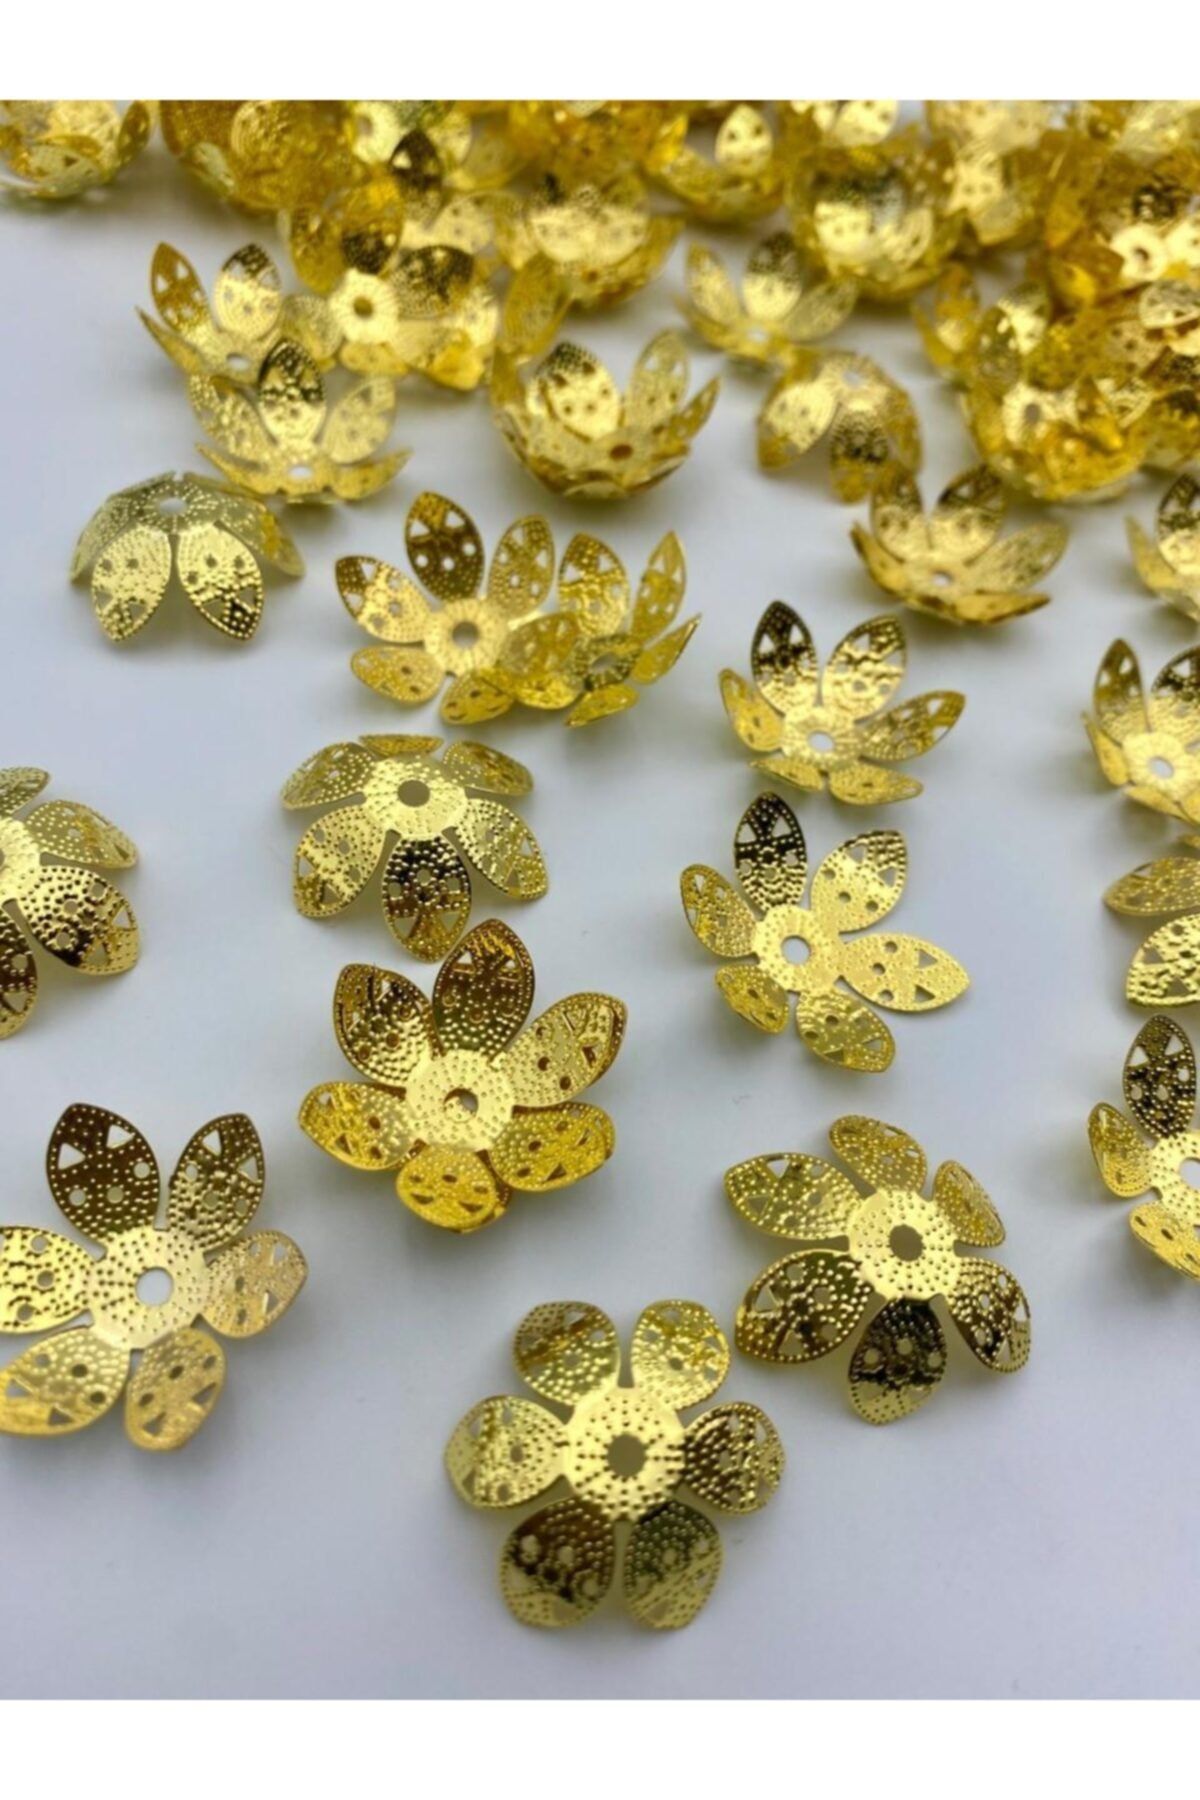 Hedef Bijuteri 24mm Çiçek Model Gold Renk Demir Kapak,boncuk Kapağı Püskül,takı Yapım Aparat (50 Adet)